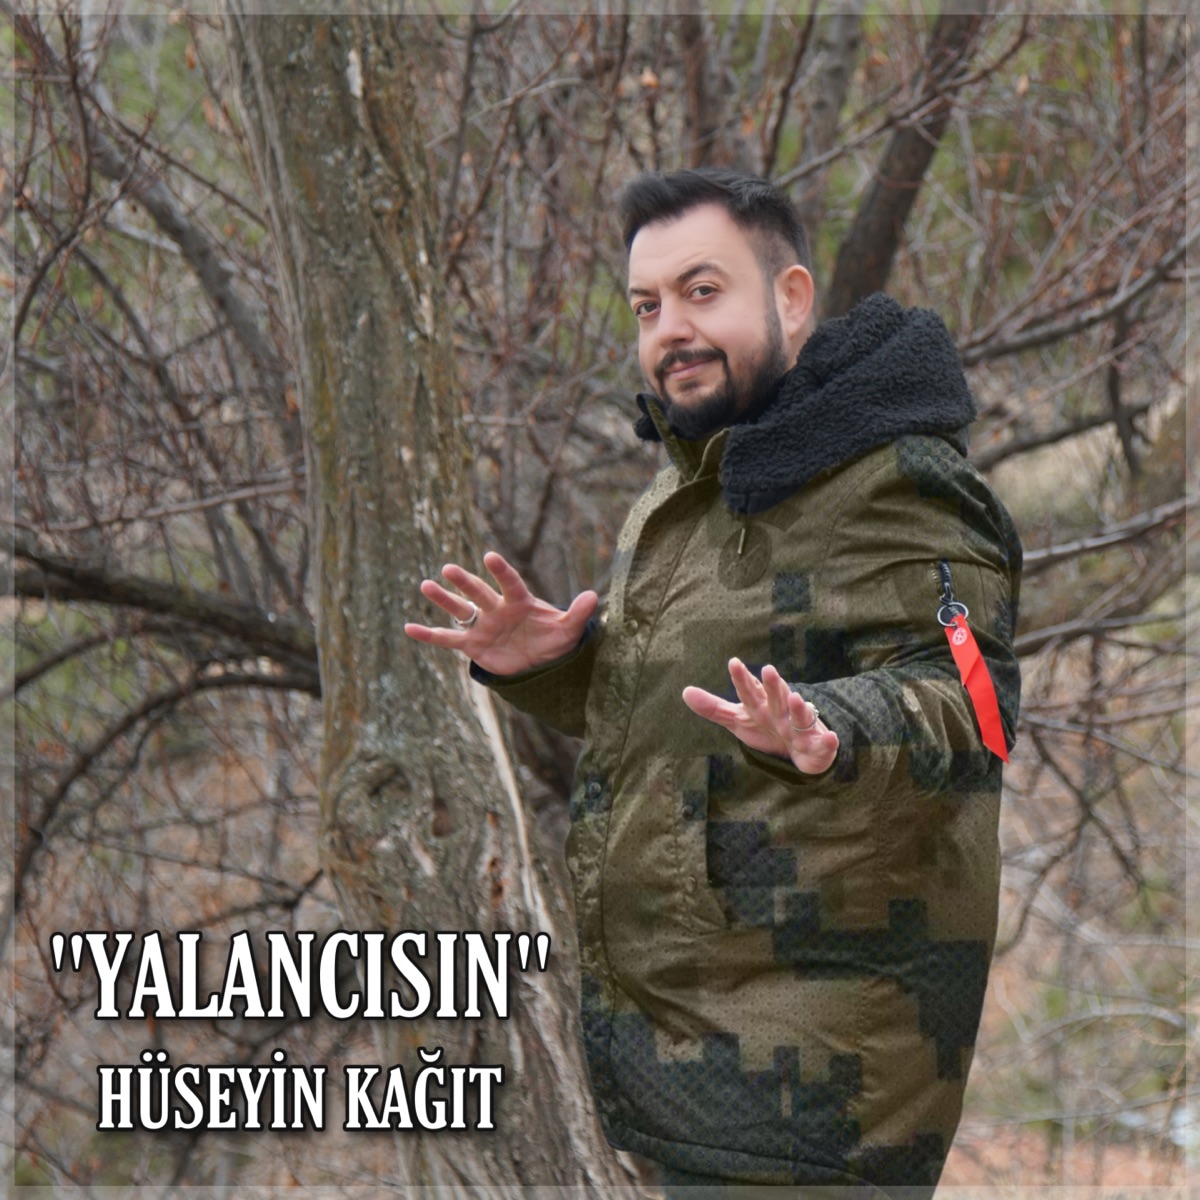 Yalancısın - Single - Album by Hüseyin Kağıt - Apple Music